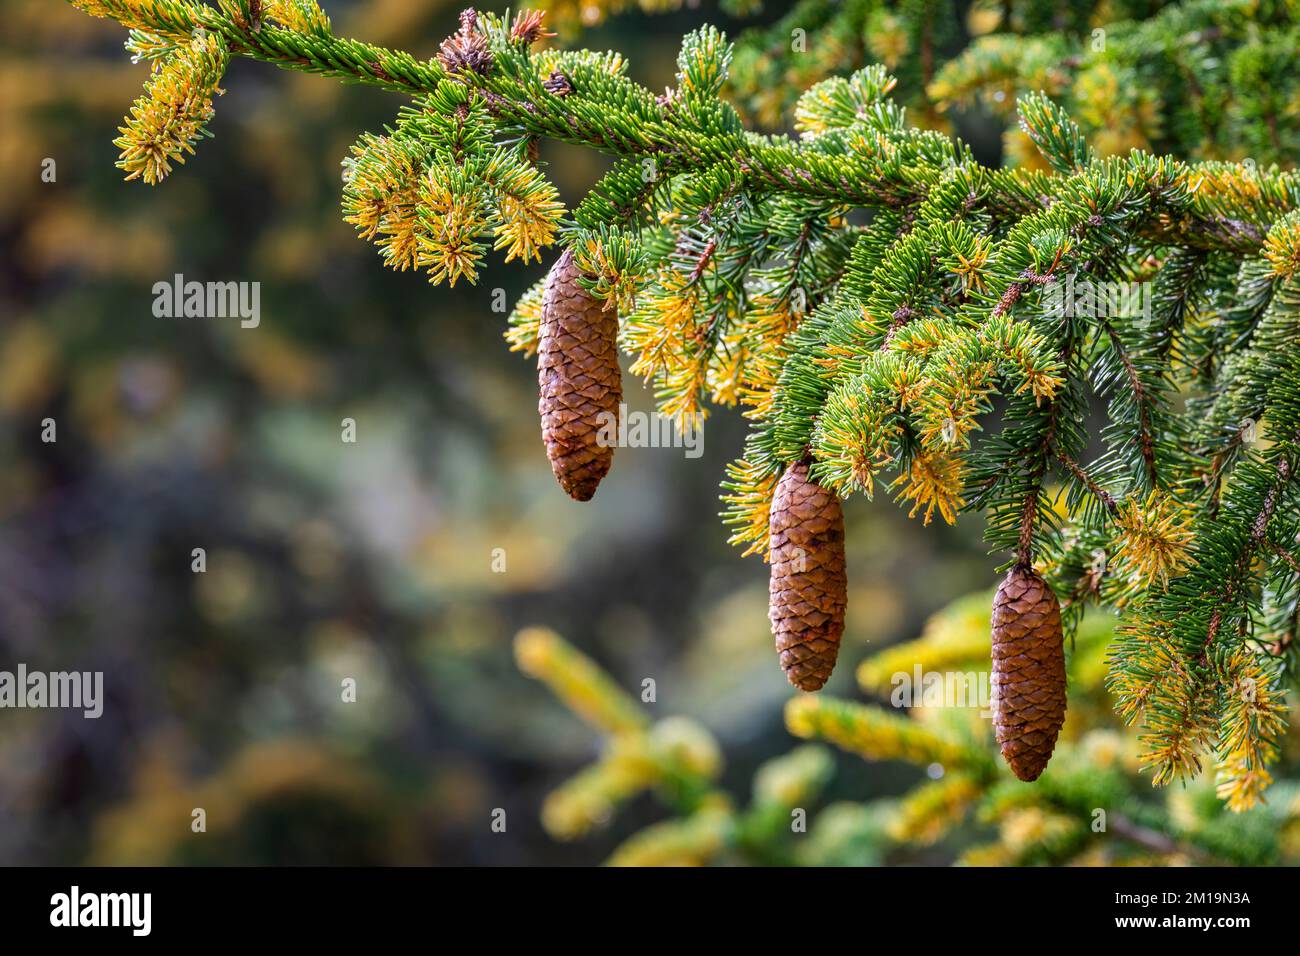 Pinus mugo close up of pine tree branch in swiss alps, Switzerland Stock Photo